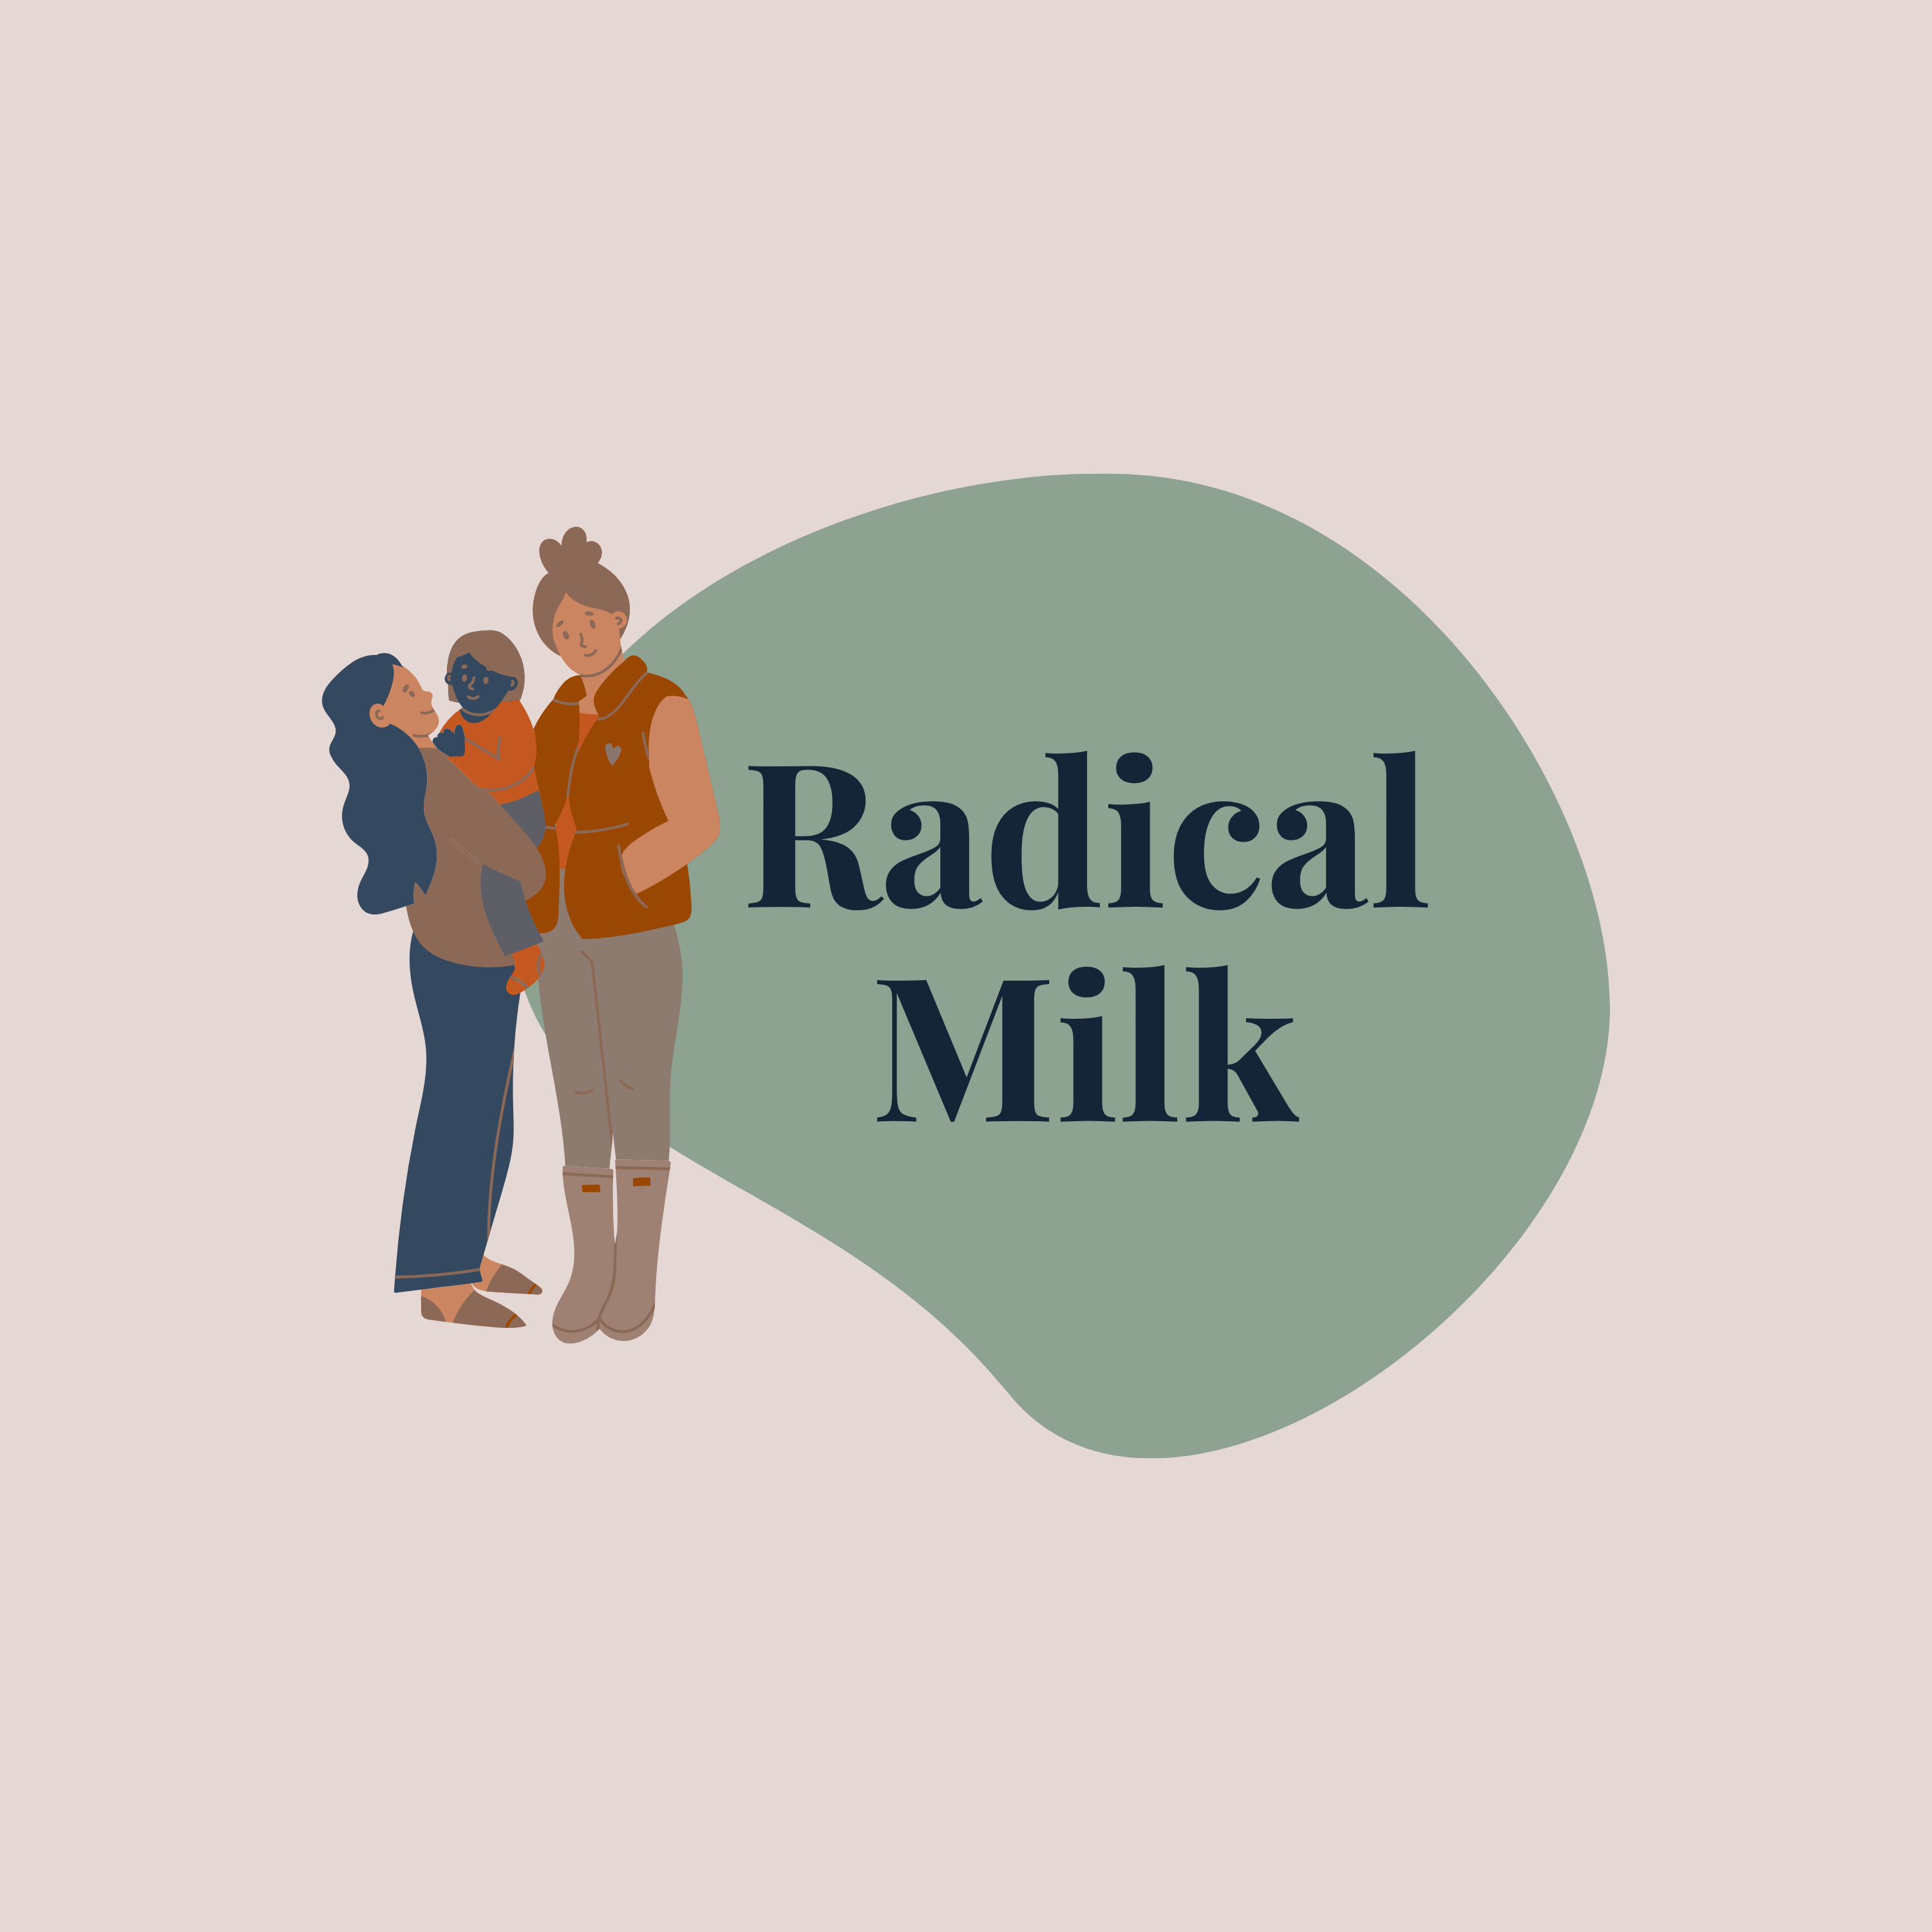 EXHIBITOR: Radical Milk Lactation Consulting